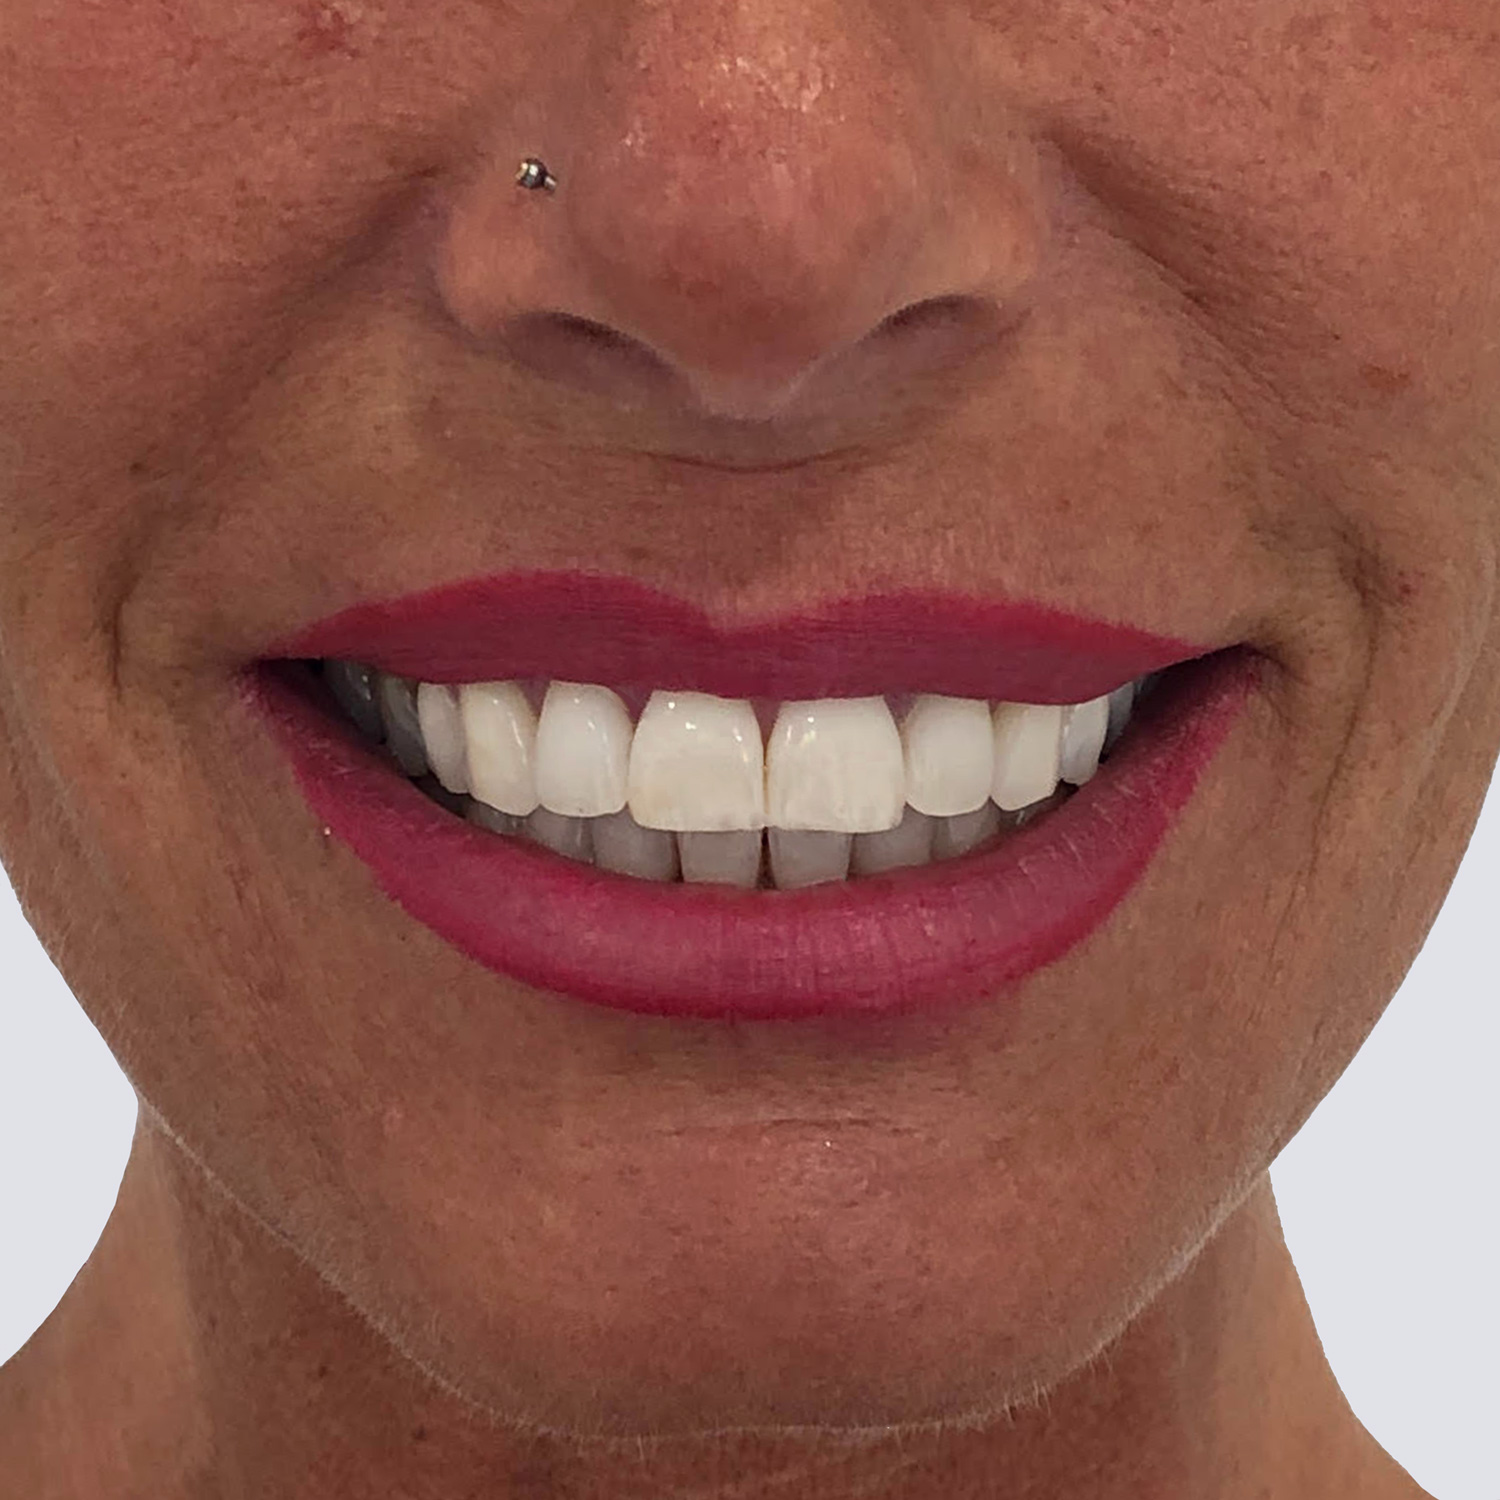 Resultados de tratamiento sonrisa gingival